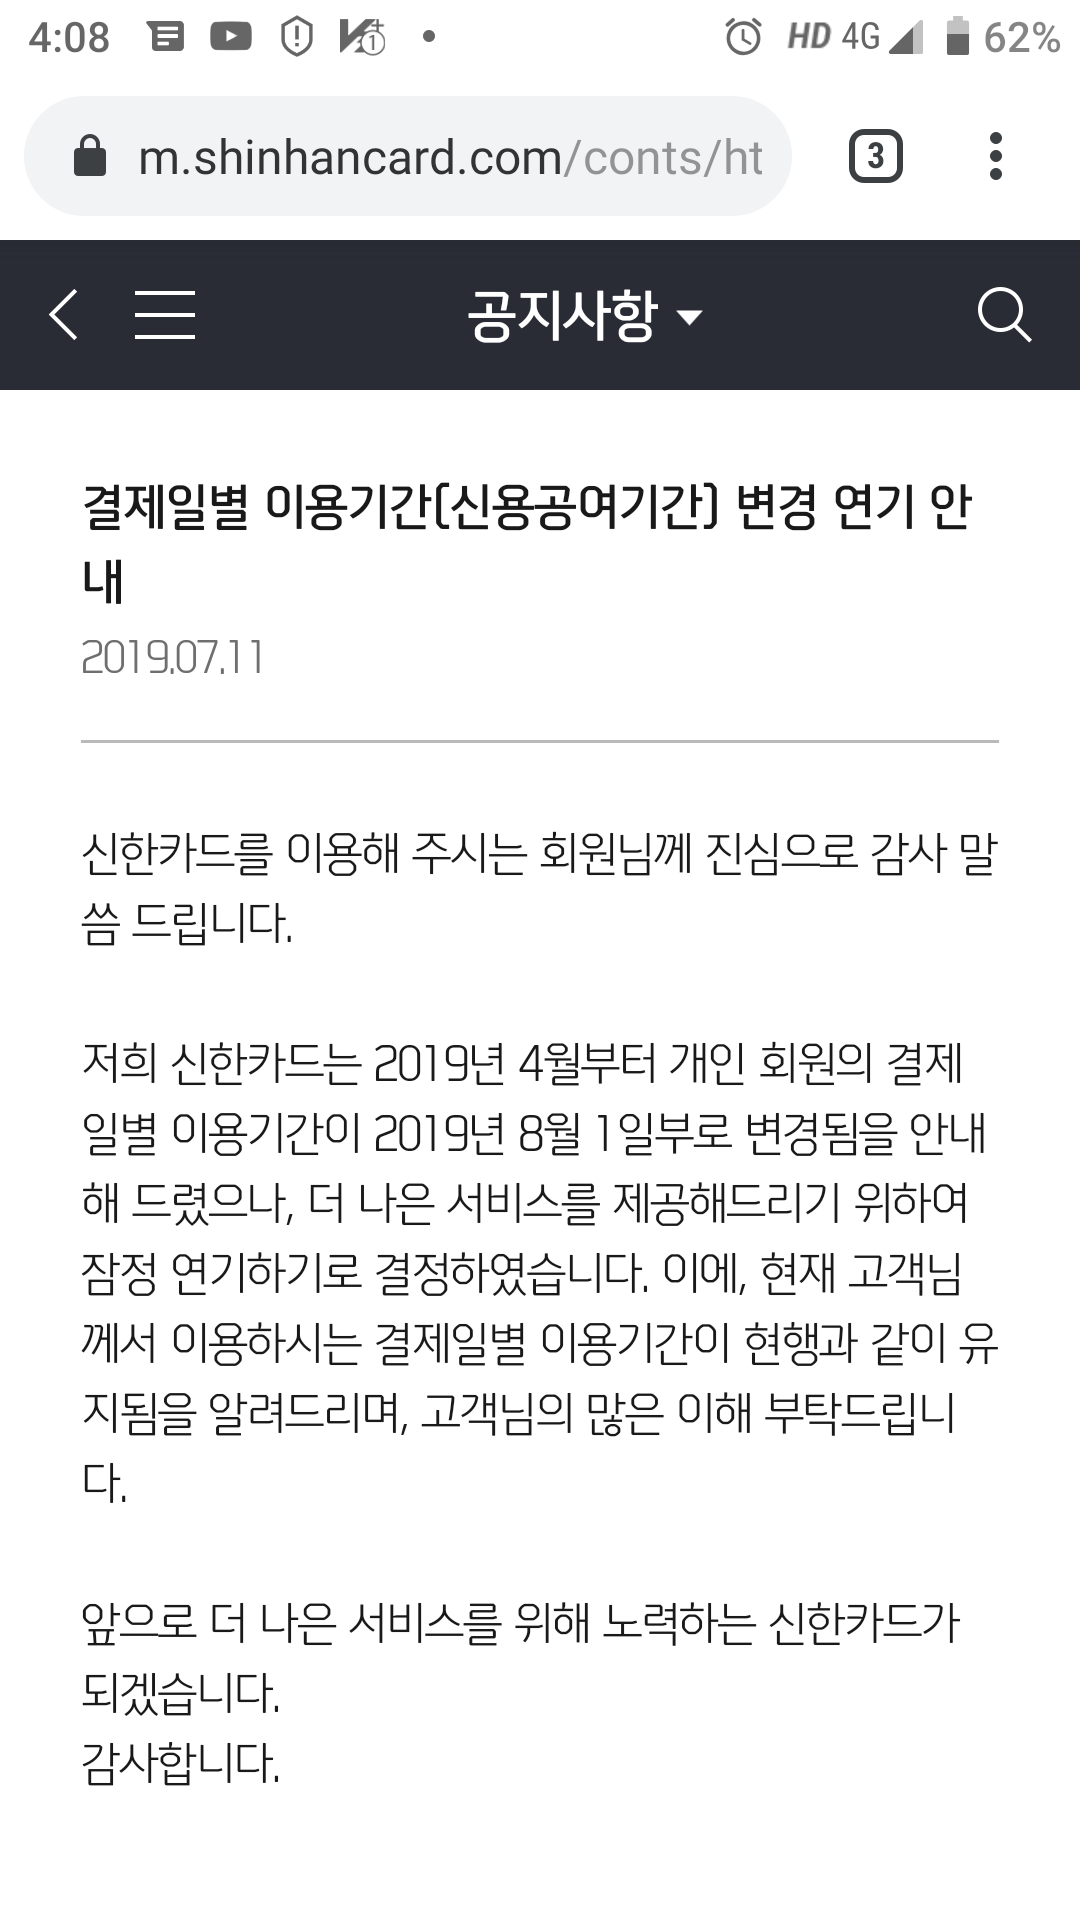 Screenshot_20190907-160824.png : 신한 딥온 체크카드로 상테크 미세먼지 팁 공유 드립니다.